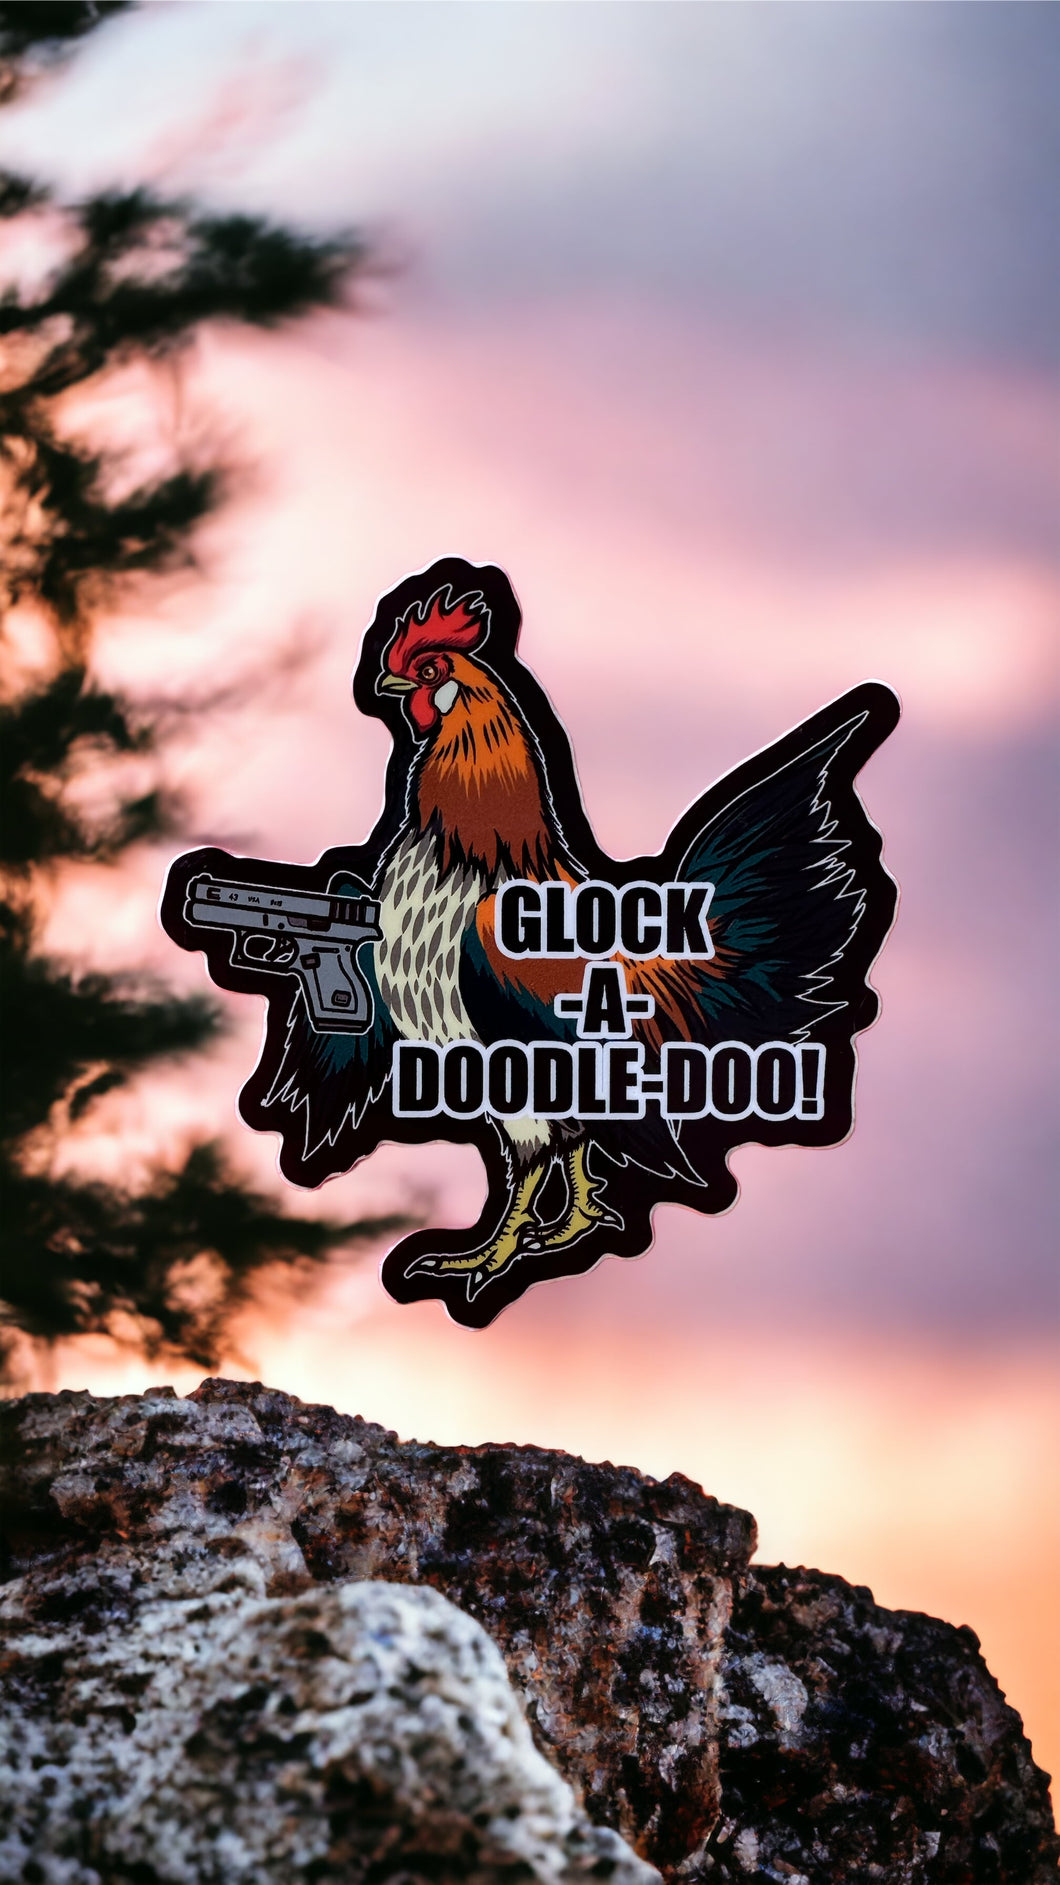 Glock a Doodle Doo! Chicken Rooster Meme Sticker! Waterproof Vinyl 3 inches